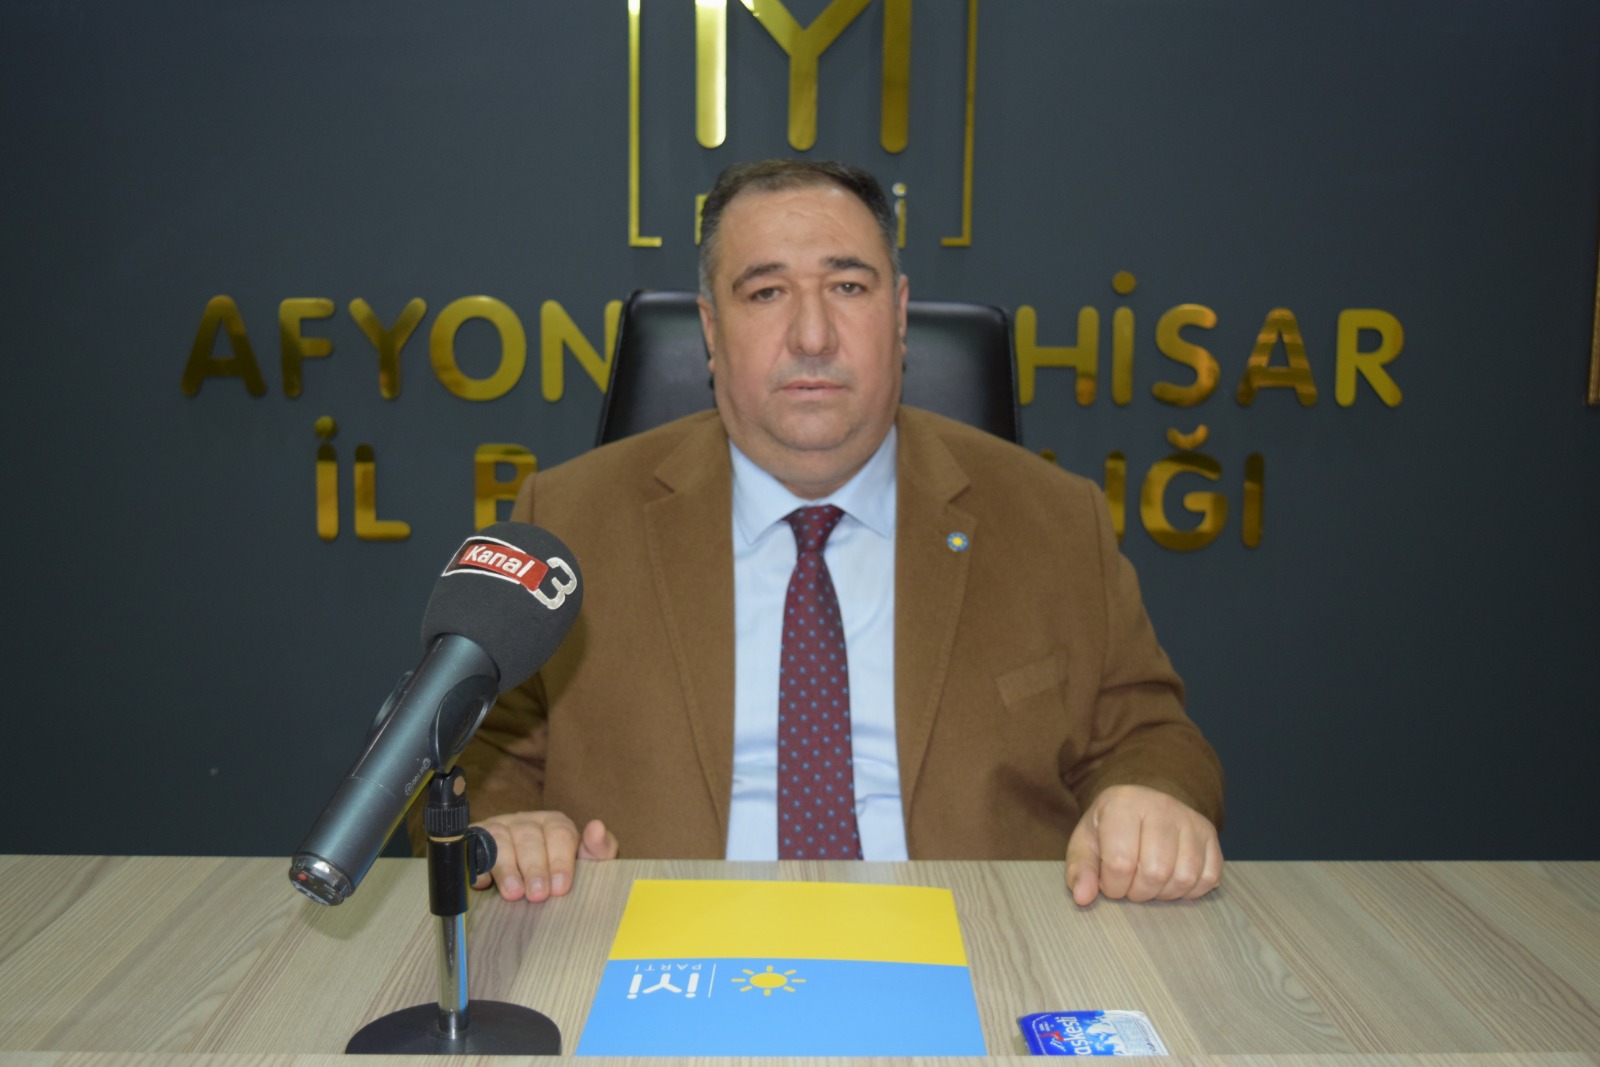 Mısırlıoğlu: “Türkiye’de gelir adaletsizliği almış başını gidiyor”